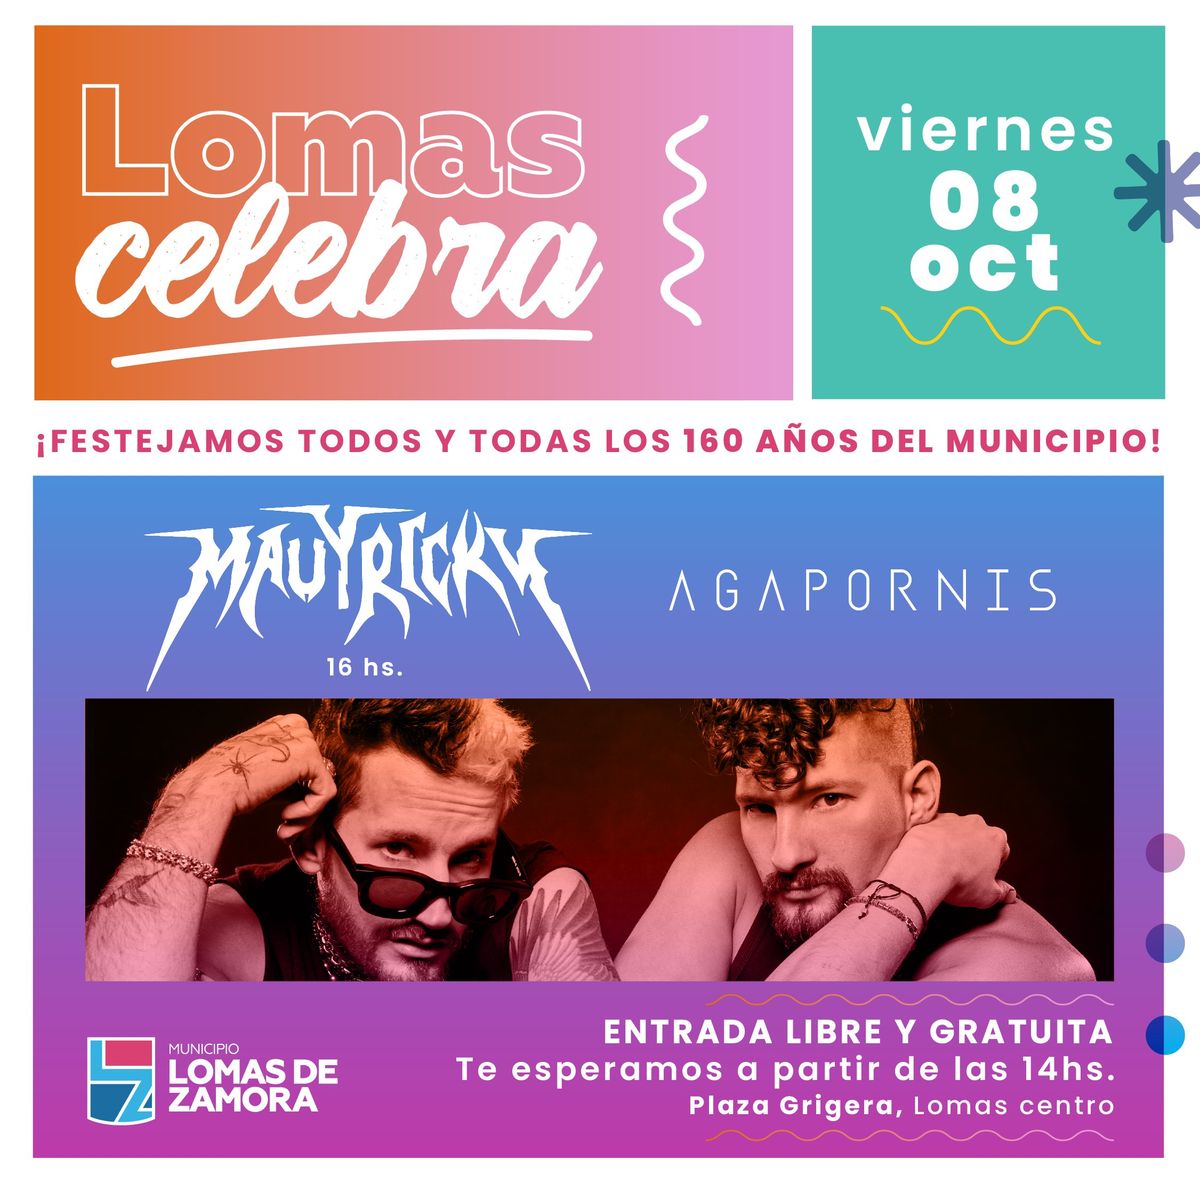 El dúo Mau y Ricky y la banda de cumbia Agapornis se presentarán gratis en Lomas de Zamora.